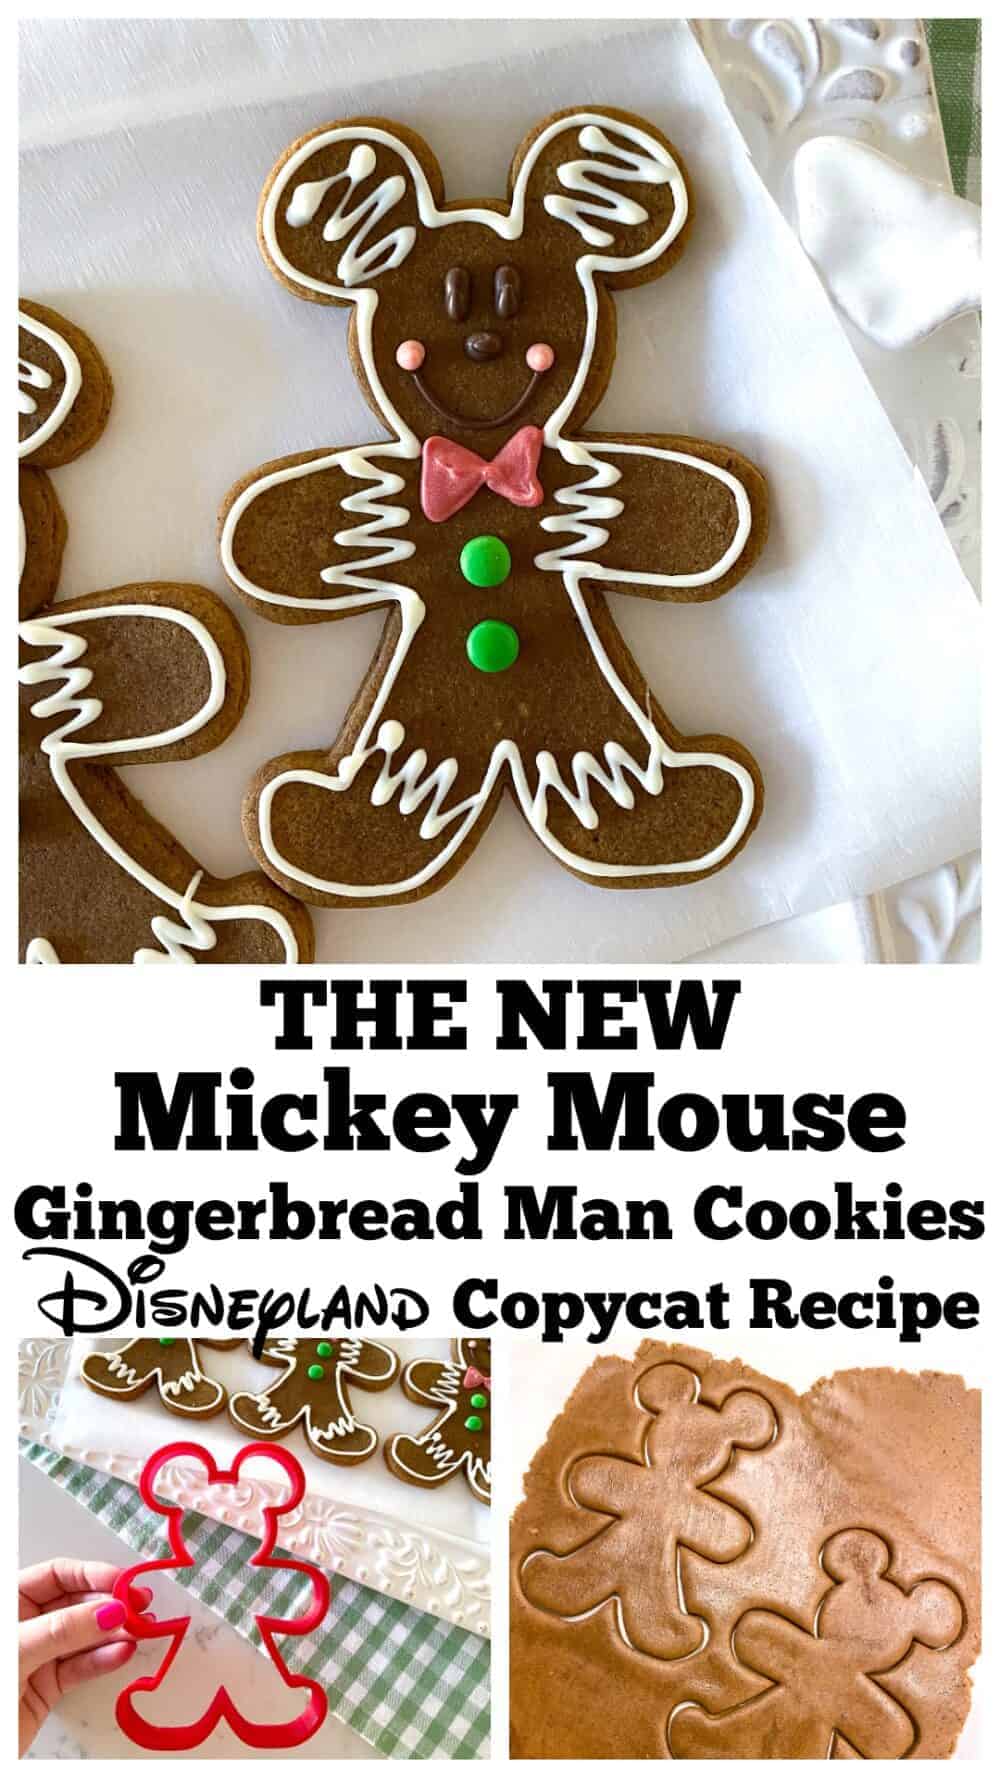 14 delicious Disney Christmas cookie recipes to bake this season